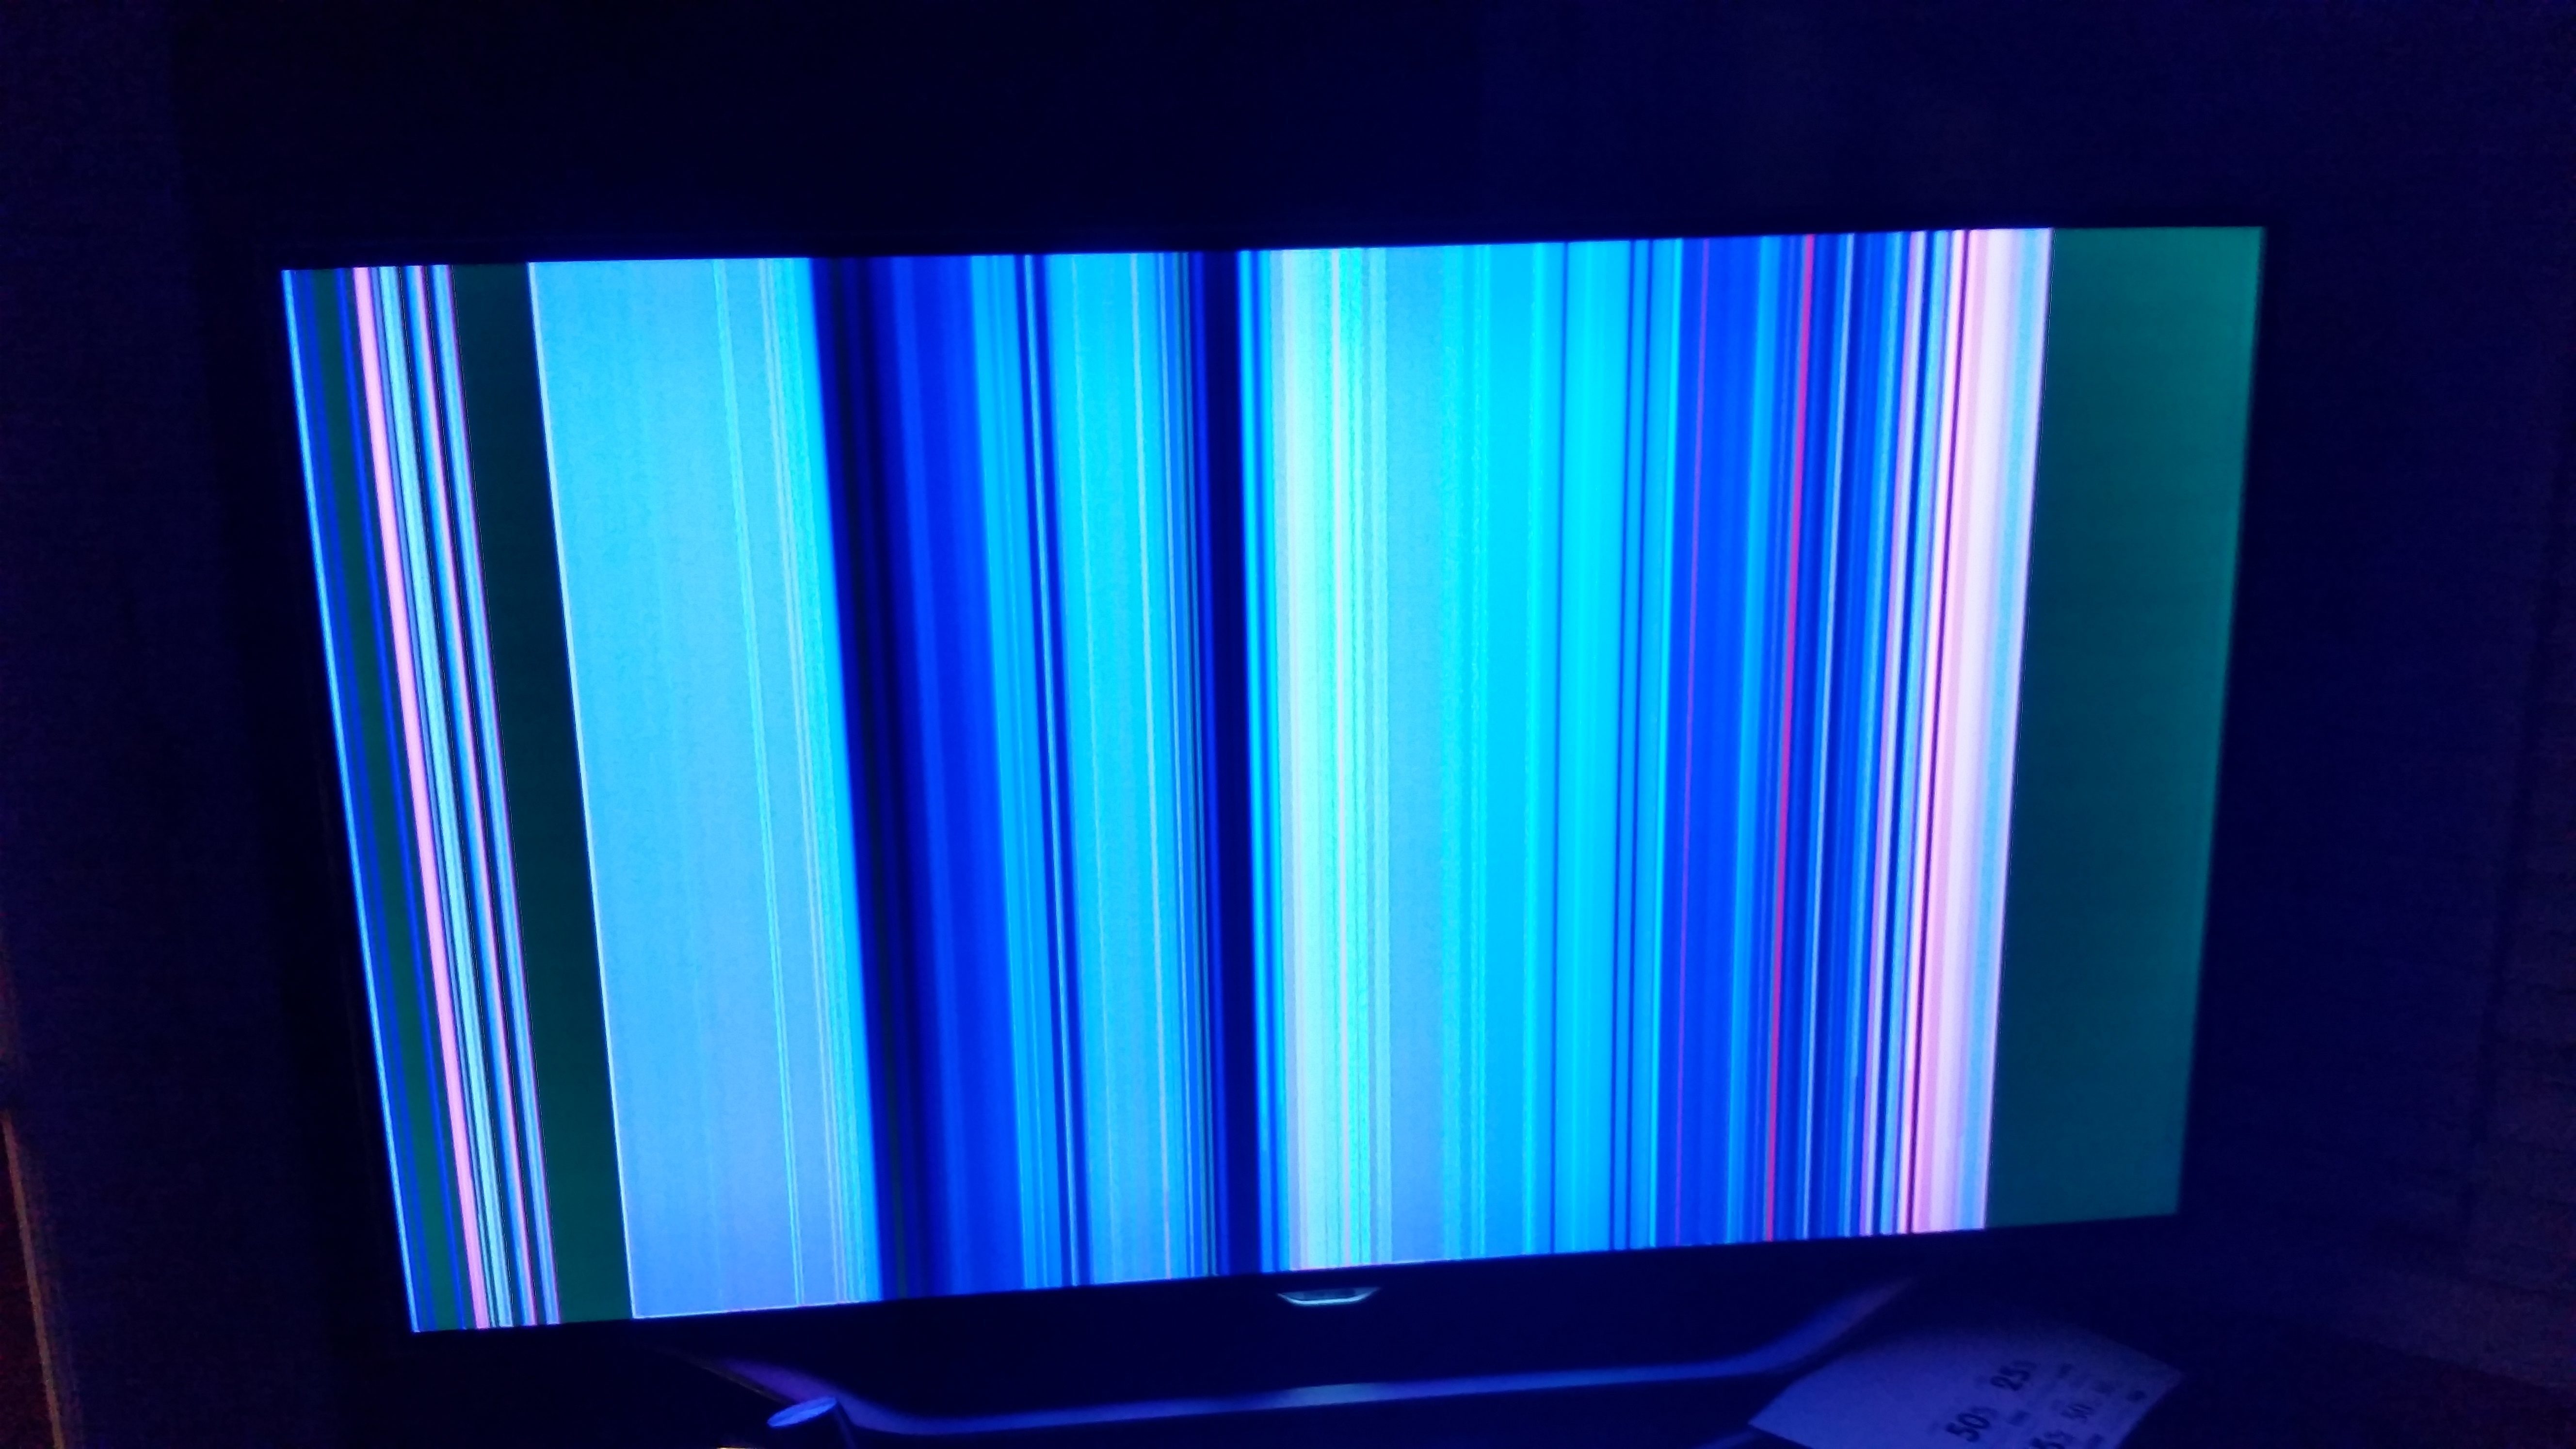 На экране 4 полосы. Телевизор Филипс горизонтальные полосы на экране. Вертикальные полосы на телевизоре. Экран телевизора. Полосымеа экране телевизора.